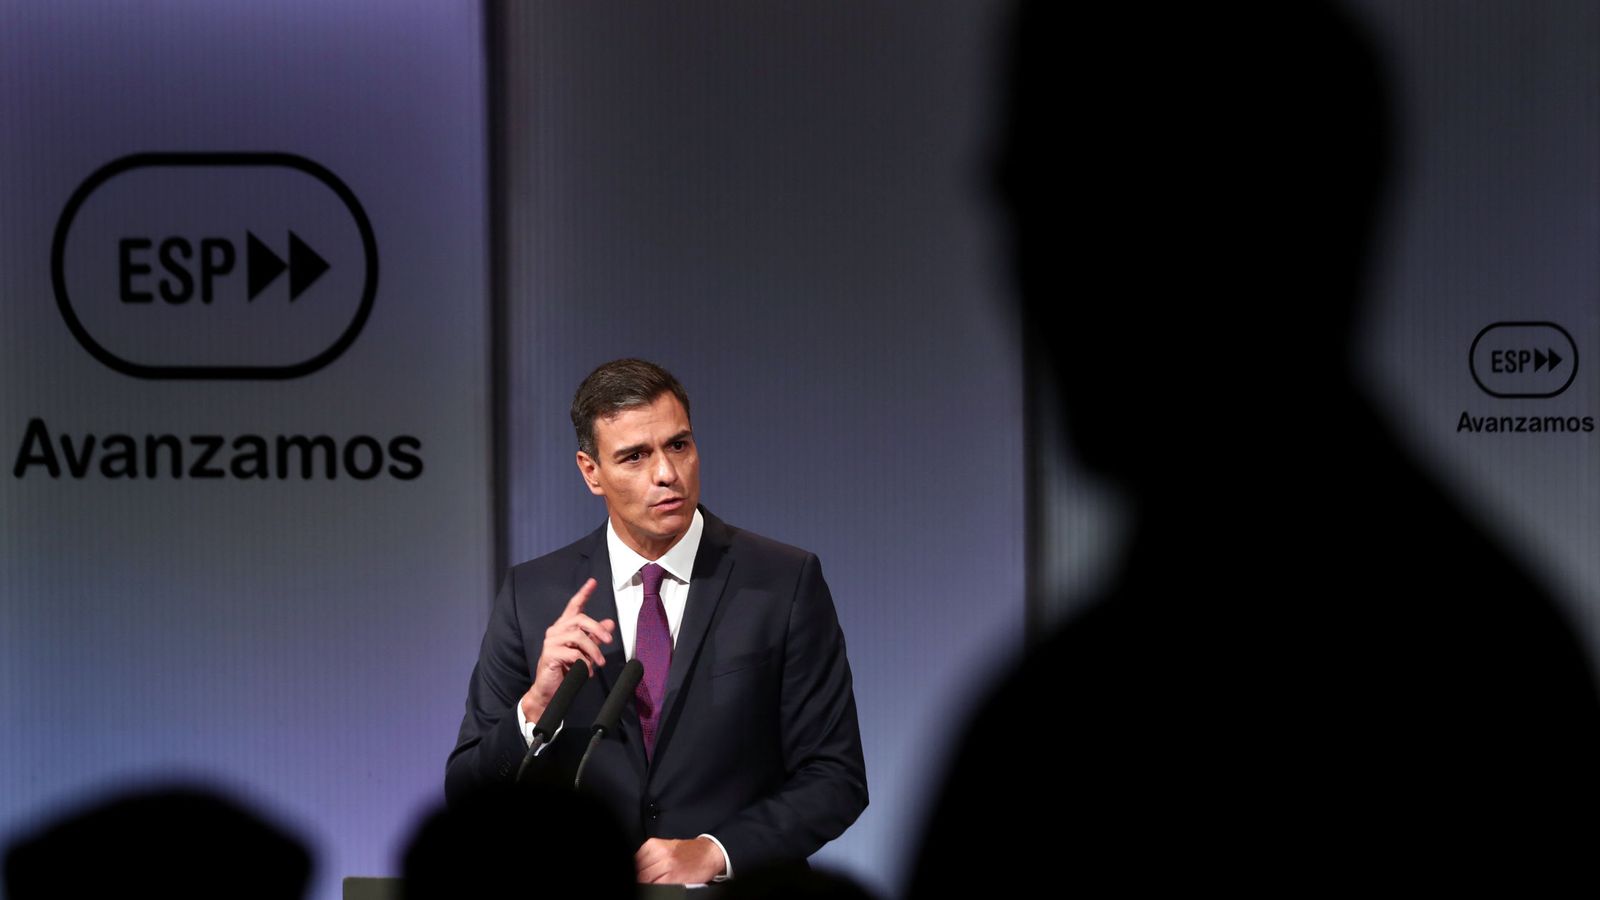 Foto: Pedro Sánchez, durante su discurso en el acto #Avanzamos, en la Casa de América de Madrid, este 17 de septiembre. (Reuters)